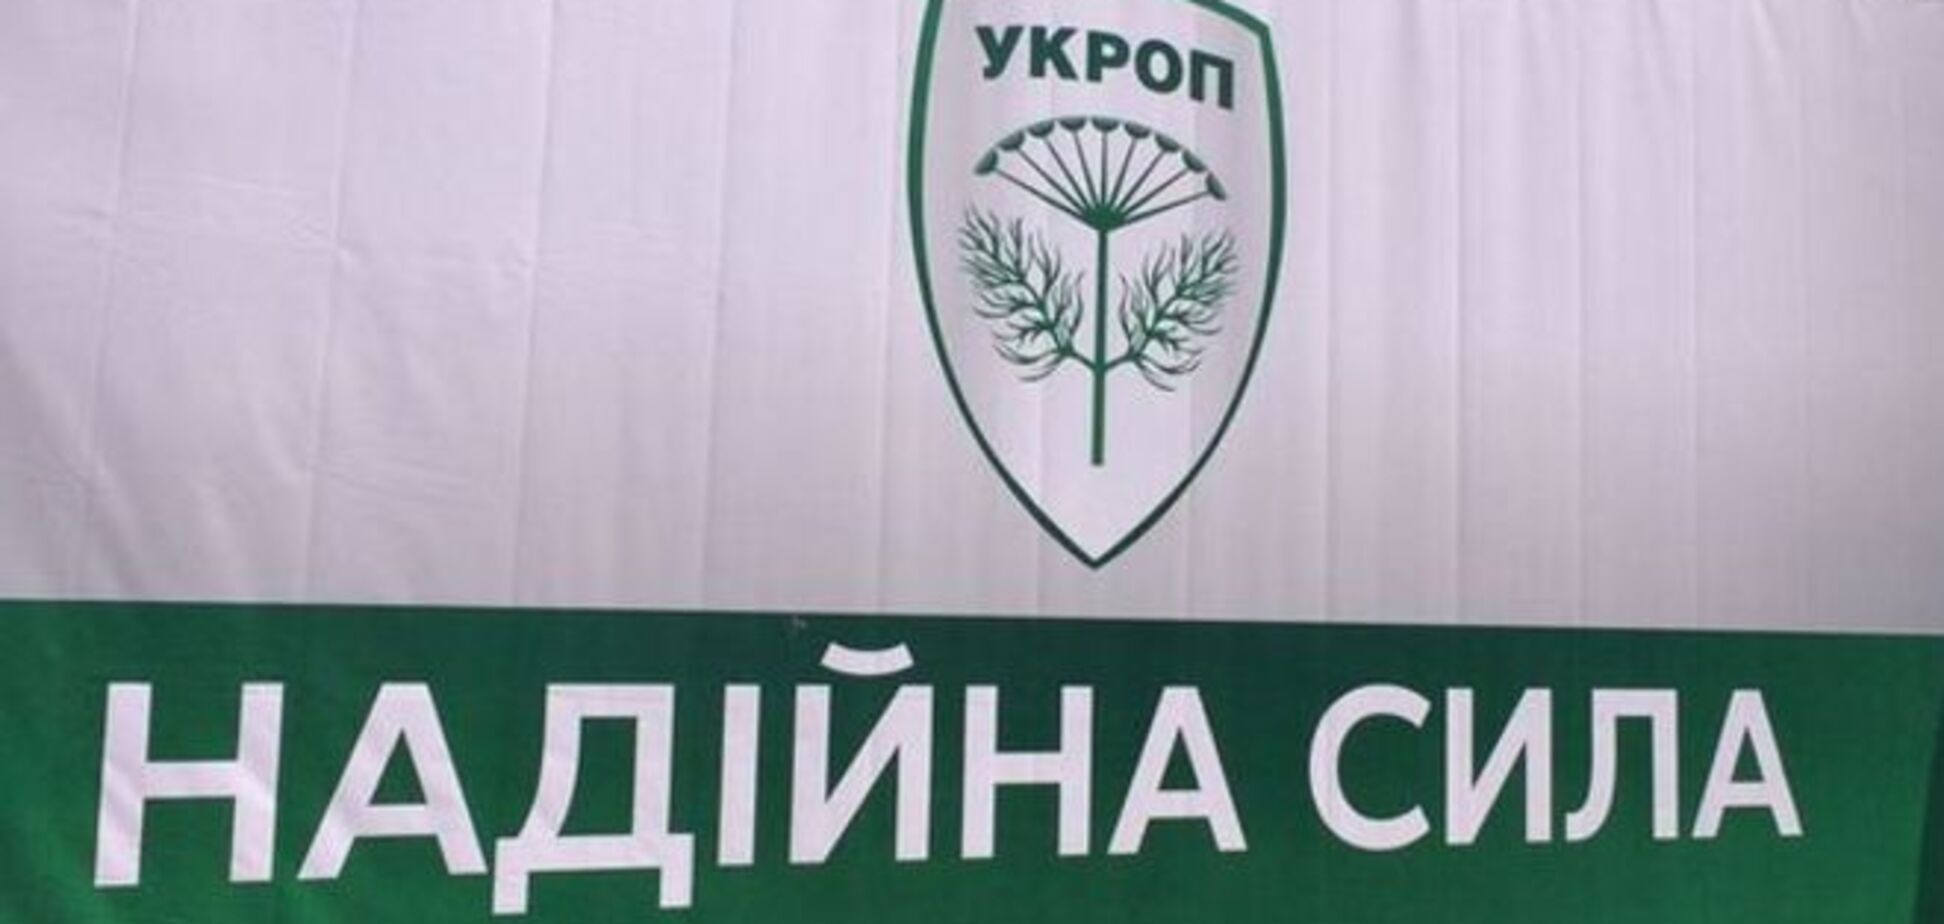 Партія 'Українське об'єднання патріотів' отримала права на використання бренду 'УКРОП'